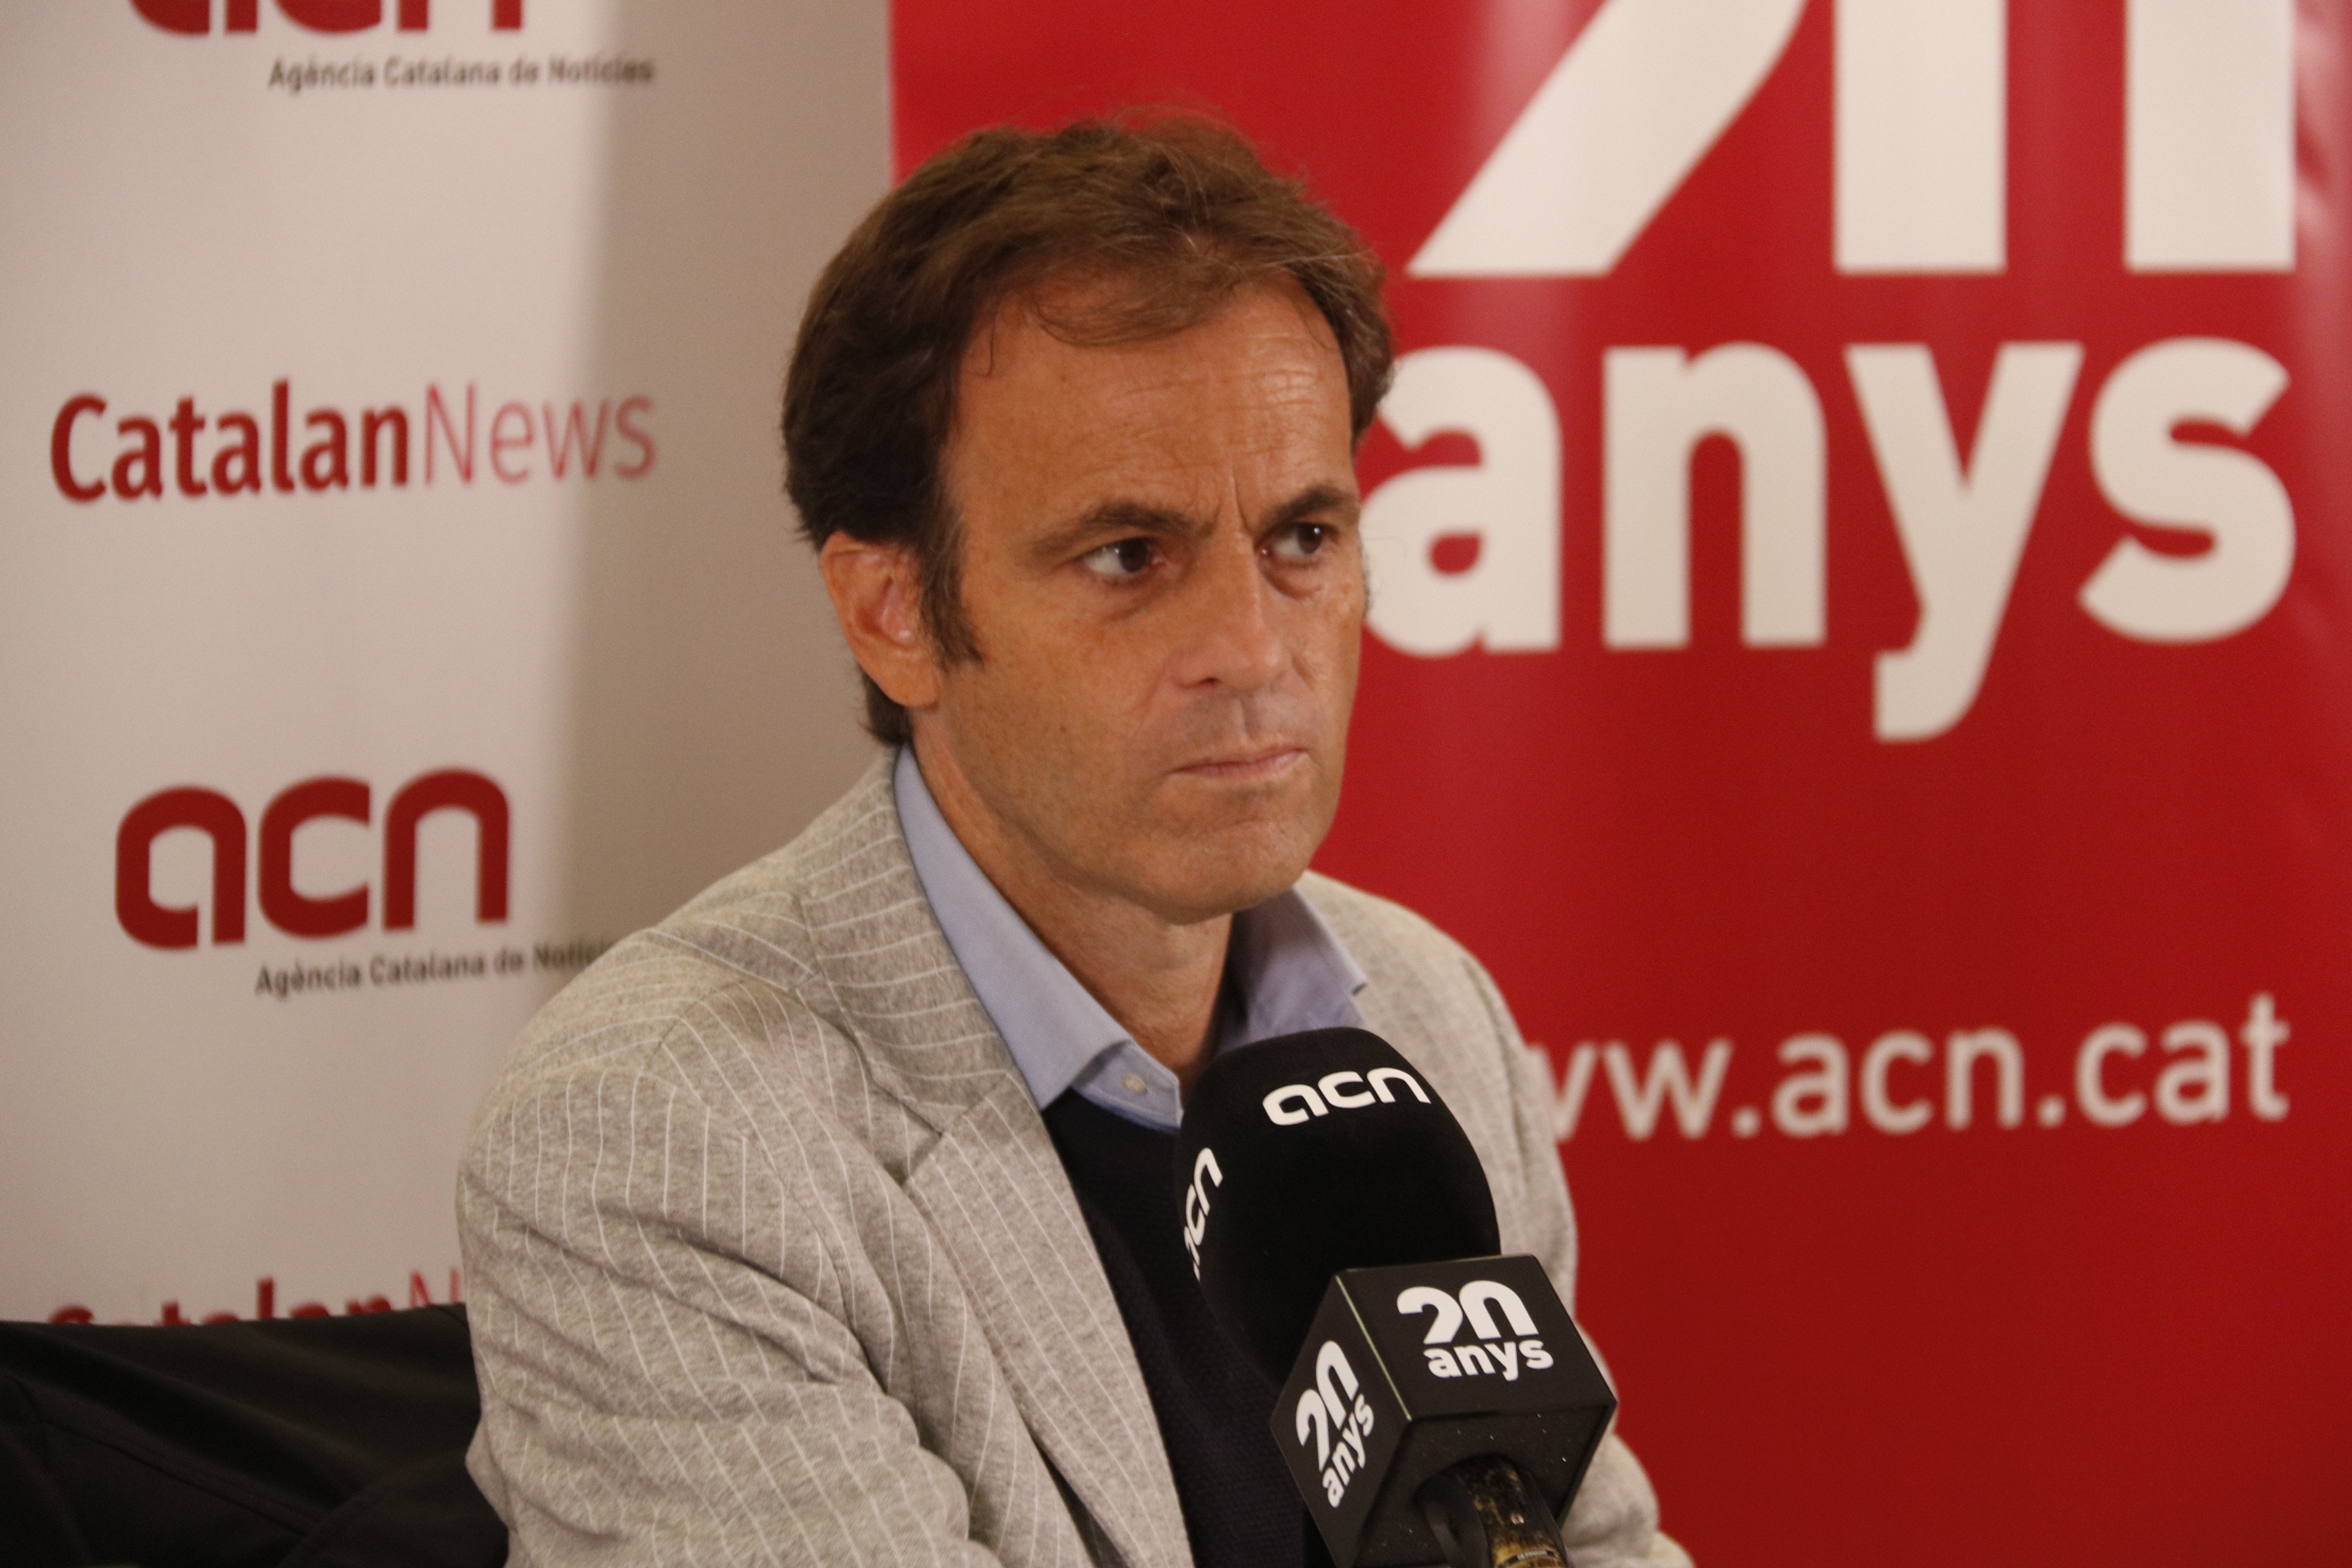 Asens quiere financiación propia y blindar la "condición nacional" de Catalunya